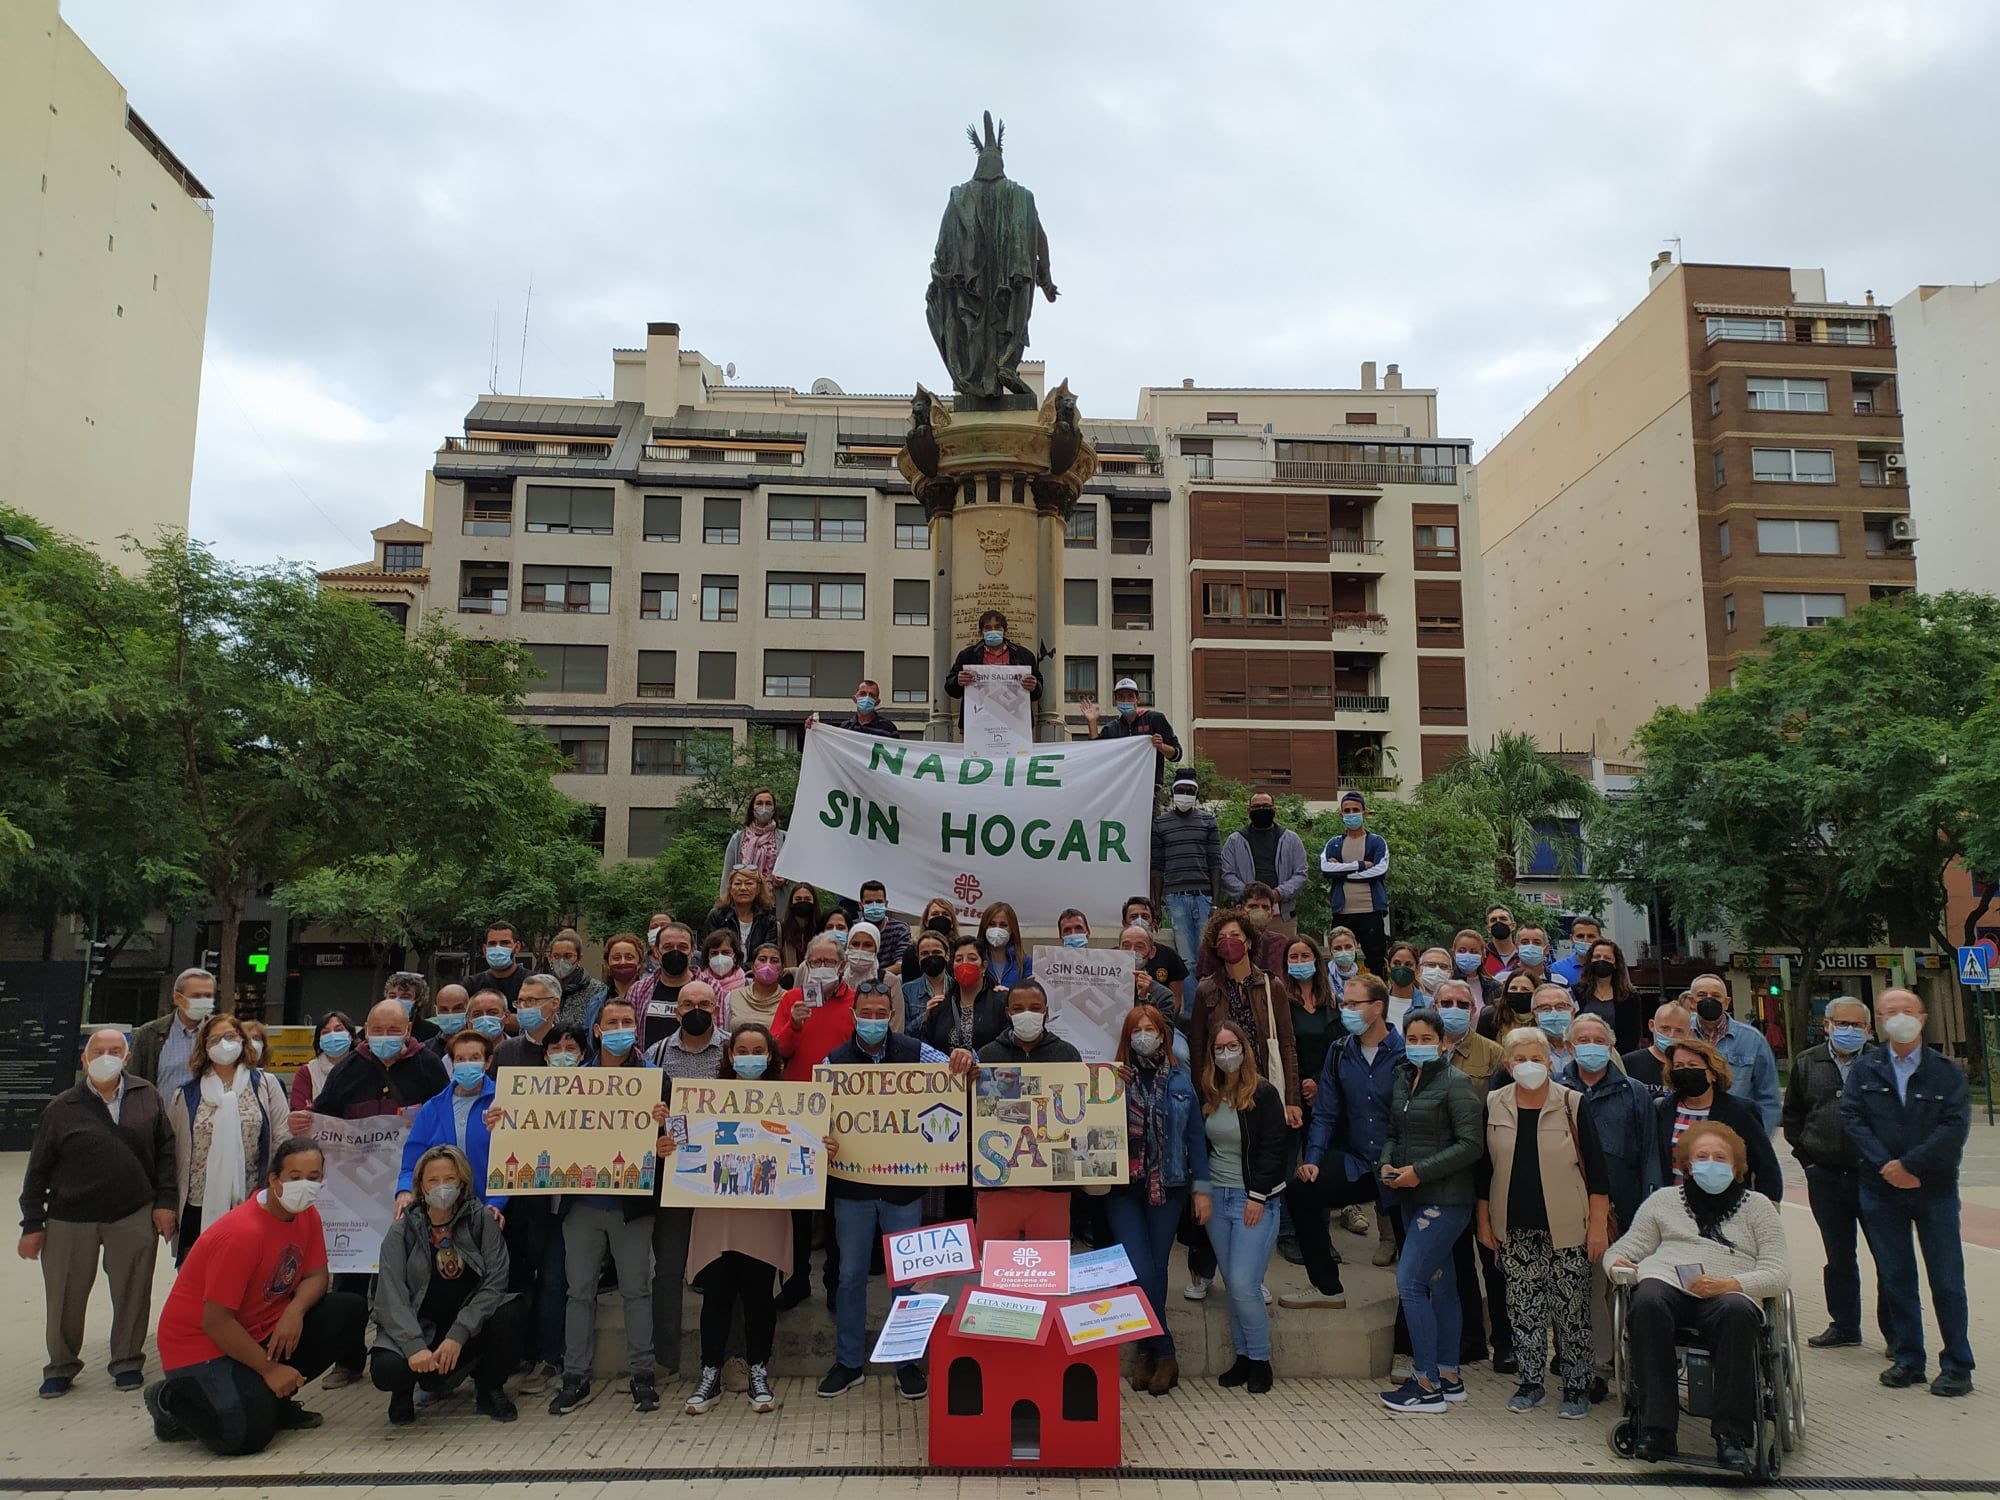 Acto de reivindicación en la plaza Huerto Sogueros de los derechos de las personas sin hogar